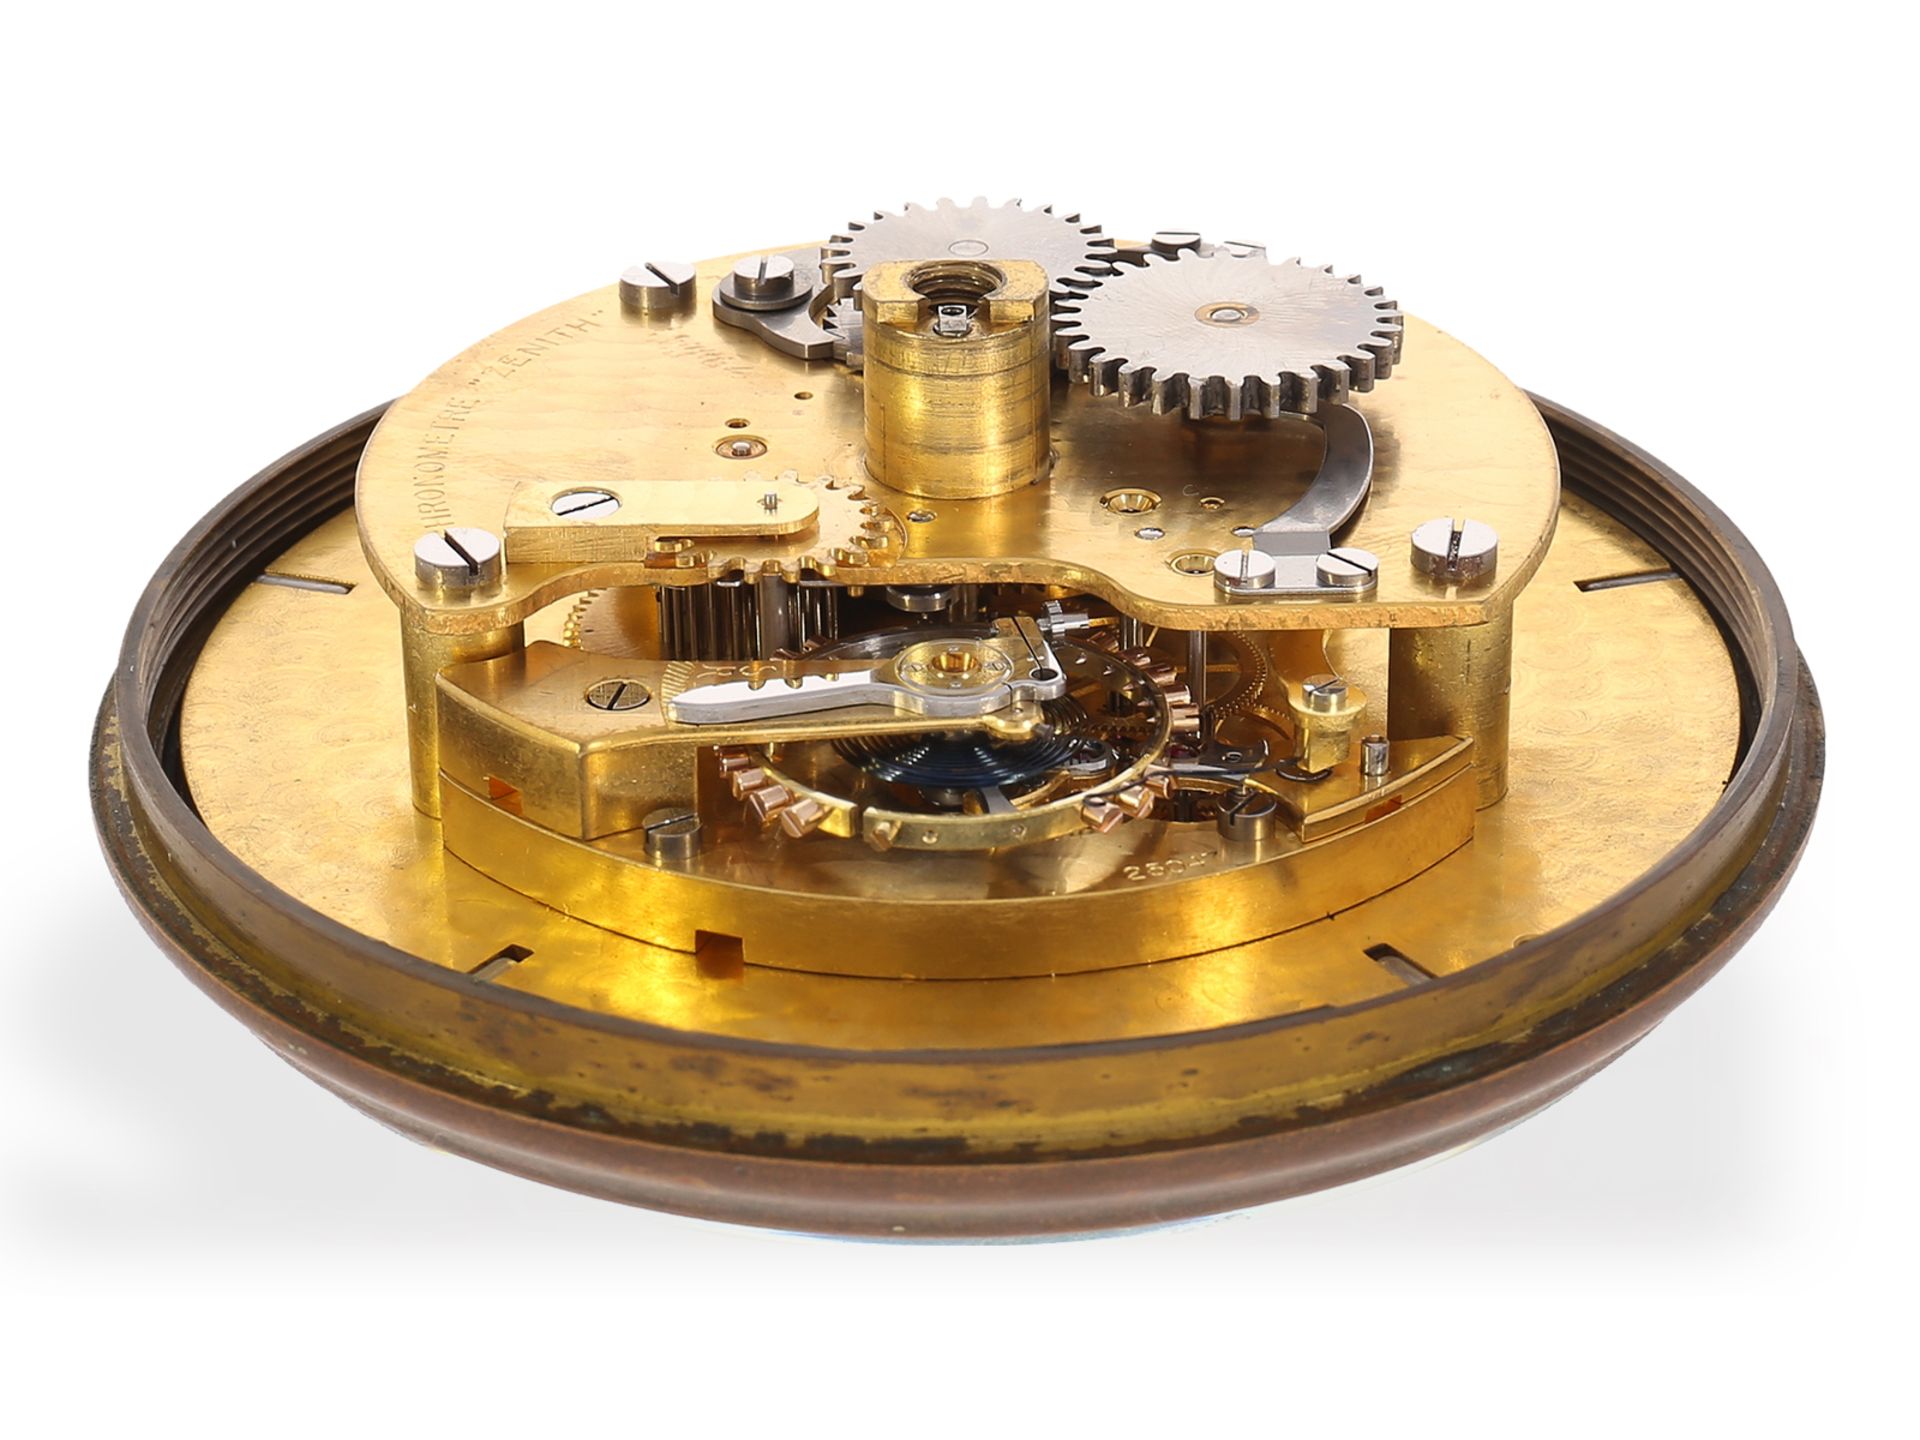 Hervorragend erhaltenes Zenith Marinechronometer, 30er Jahre - Bild 7 aus 7